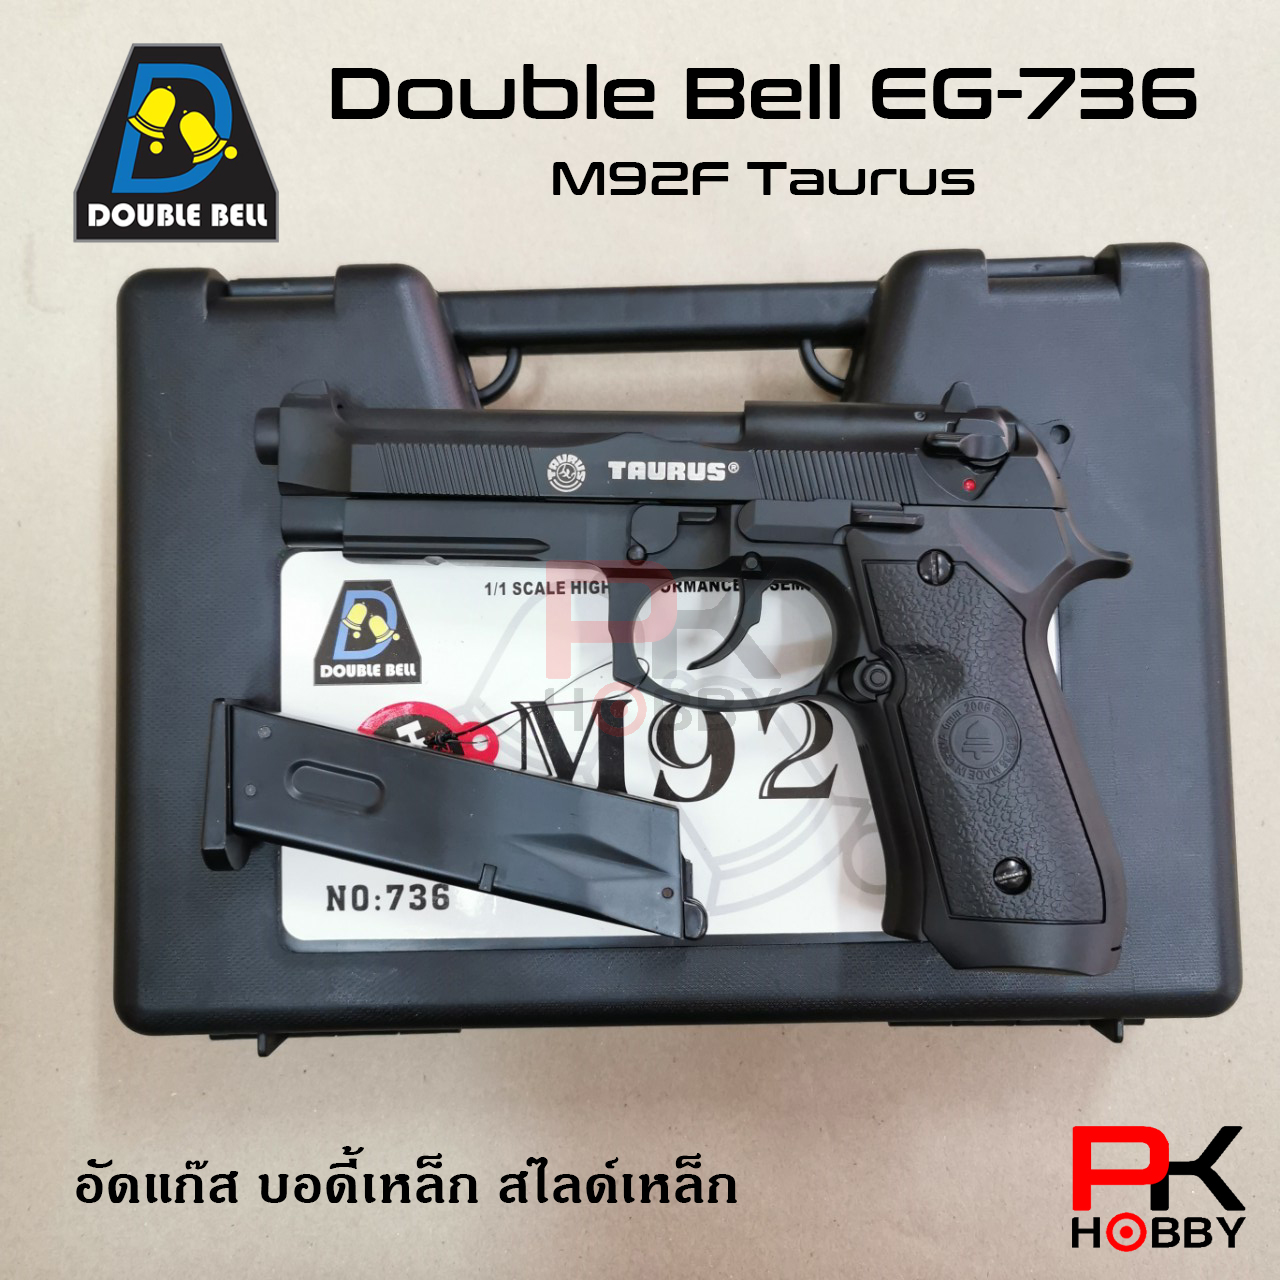 ปืนบีบีกัน ปืนแอร์ซอฟต์ Double Bell EG-736 (ทรง M92F TAURUS)  ระบบอัดแก๊ส โบลว์แบล็ค